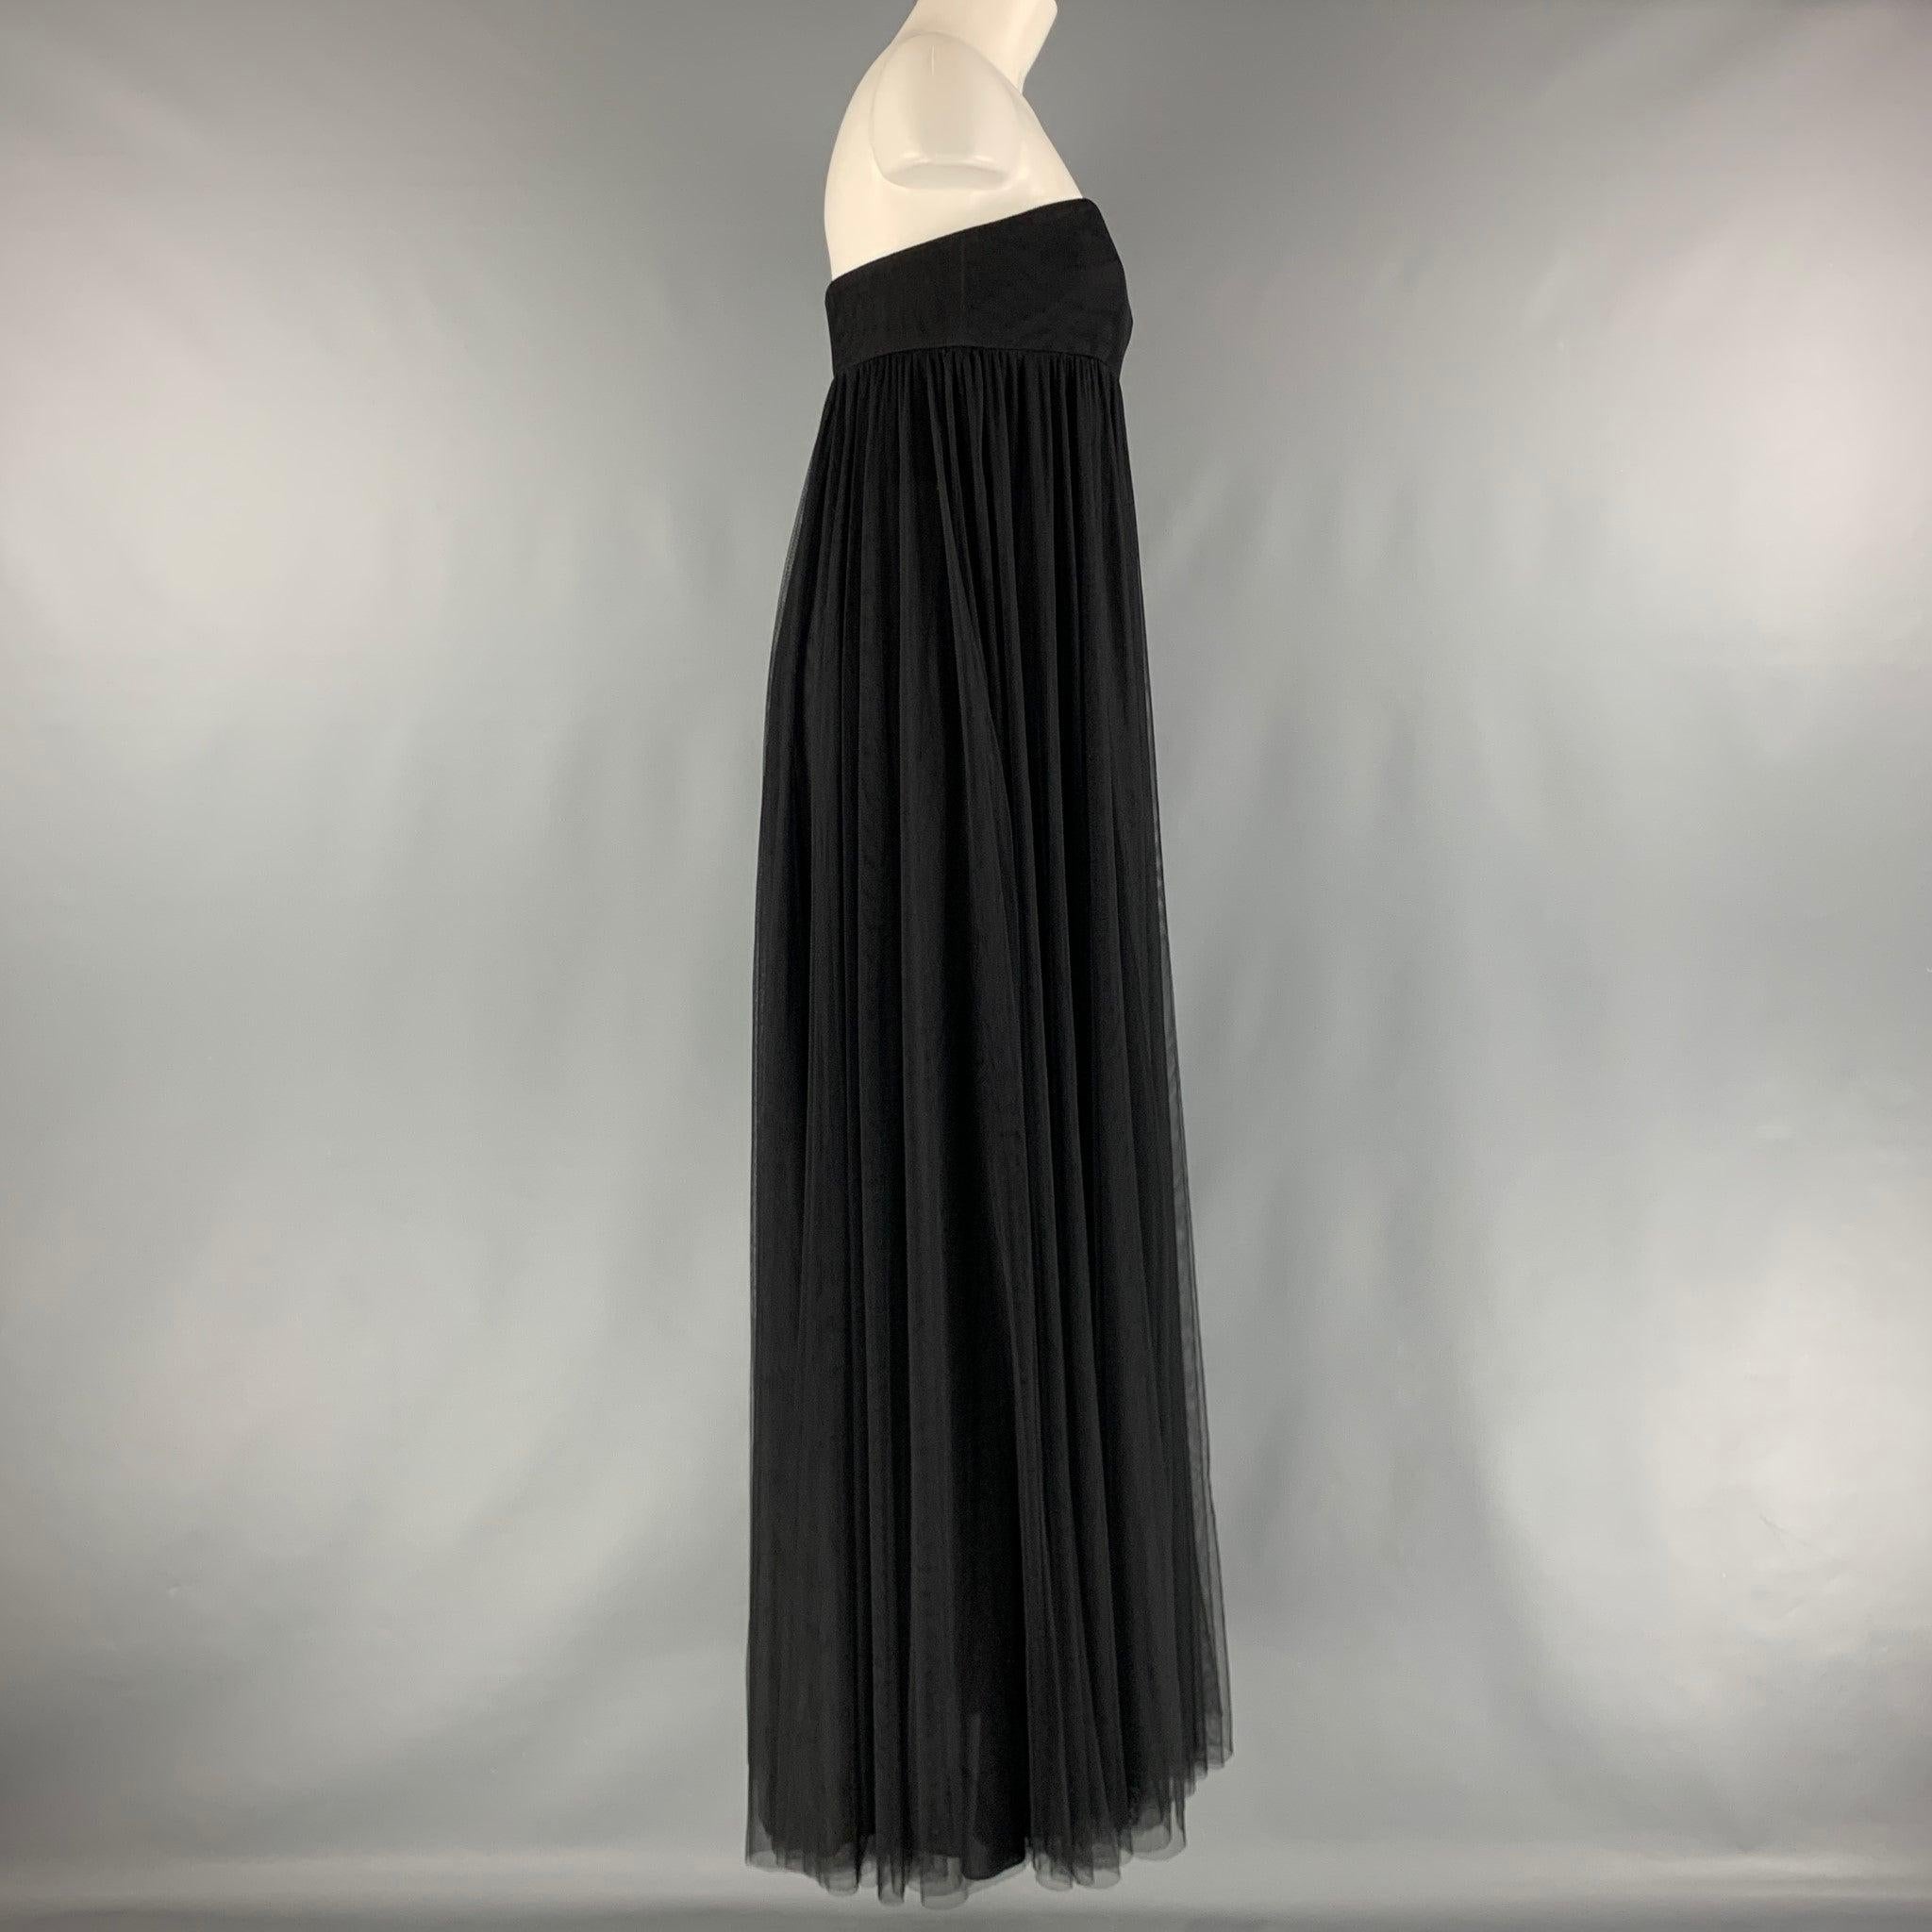 La robe longue VERA WANG COLLECTION est en maille polyester noire et présente un bustier, une doublure corset, une taille empire et une fermeture à glissière sur le côté.Excellent état d'occasion. 

Marqué :  6 

Mesures : 
 Buste : 30 pouces Taille